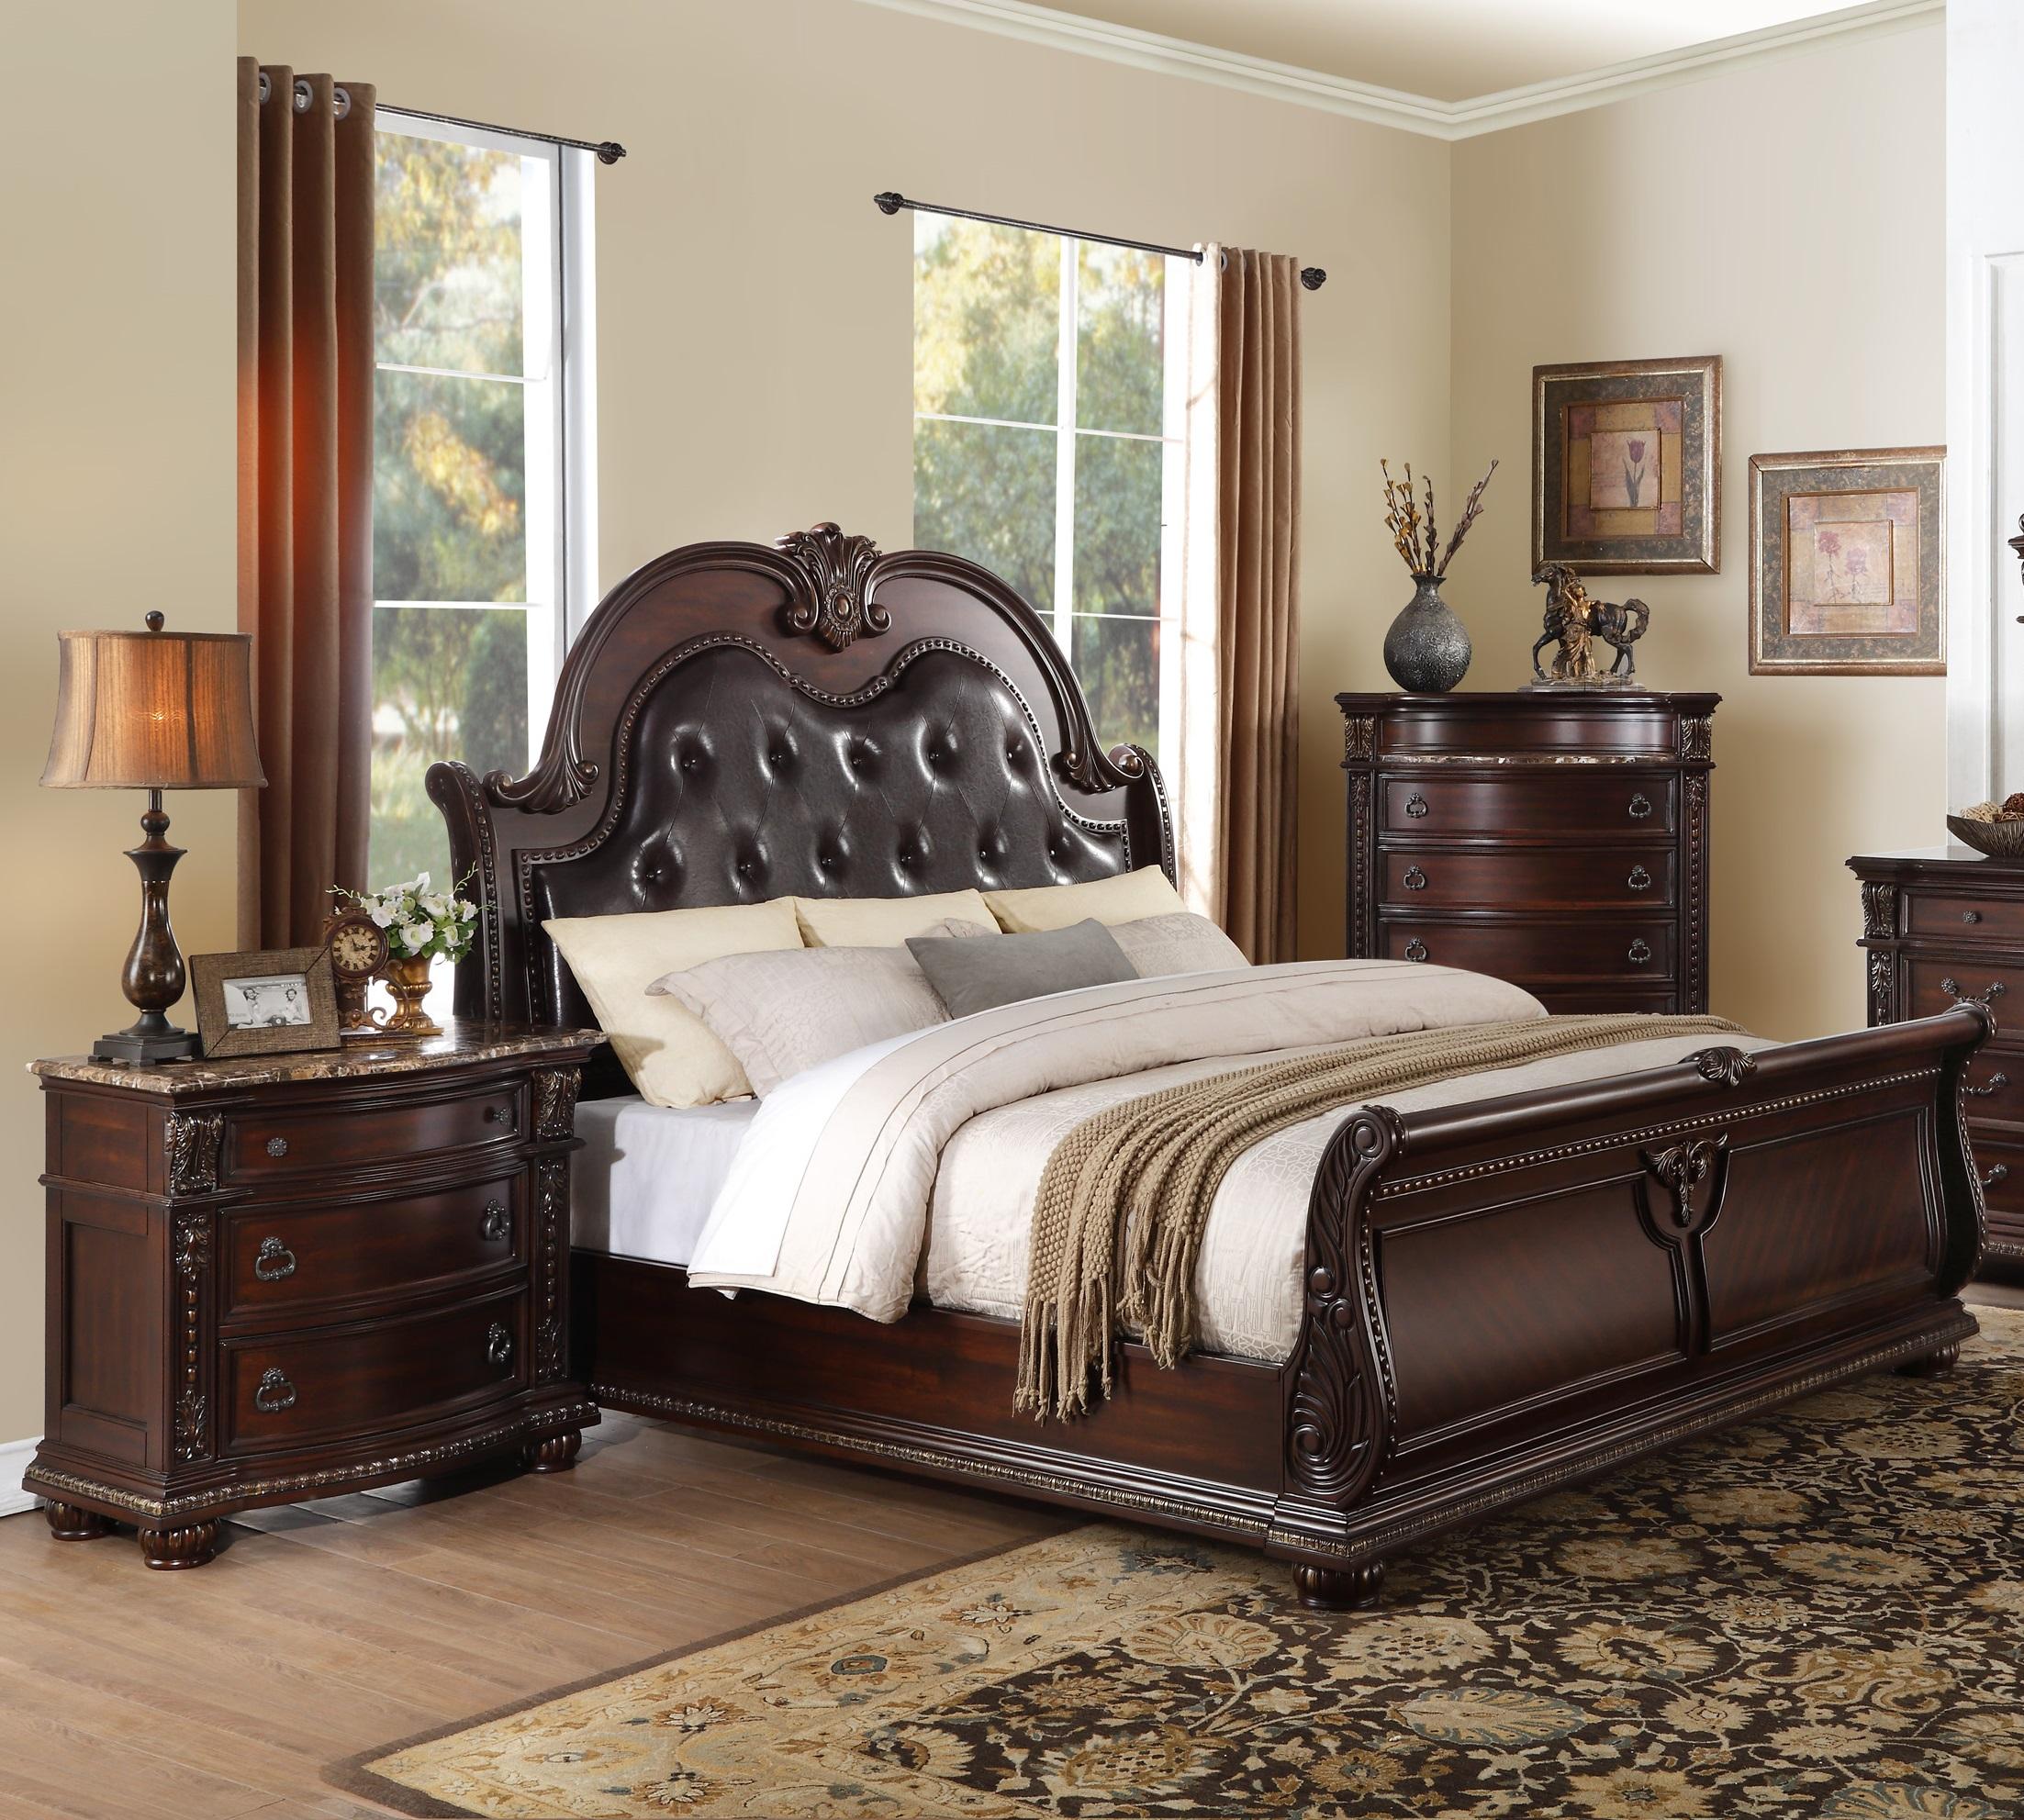 

    
Classic Dark Cherry Wood Queen Bedroom Set 3pcs Homelegance 1757-1* Cavalier
